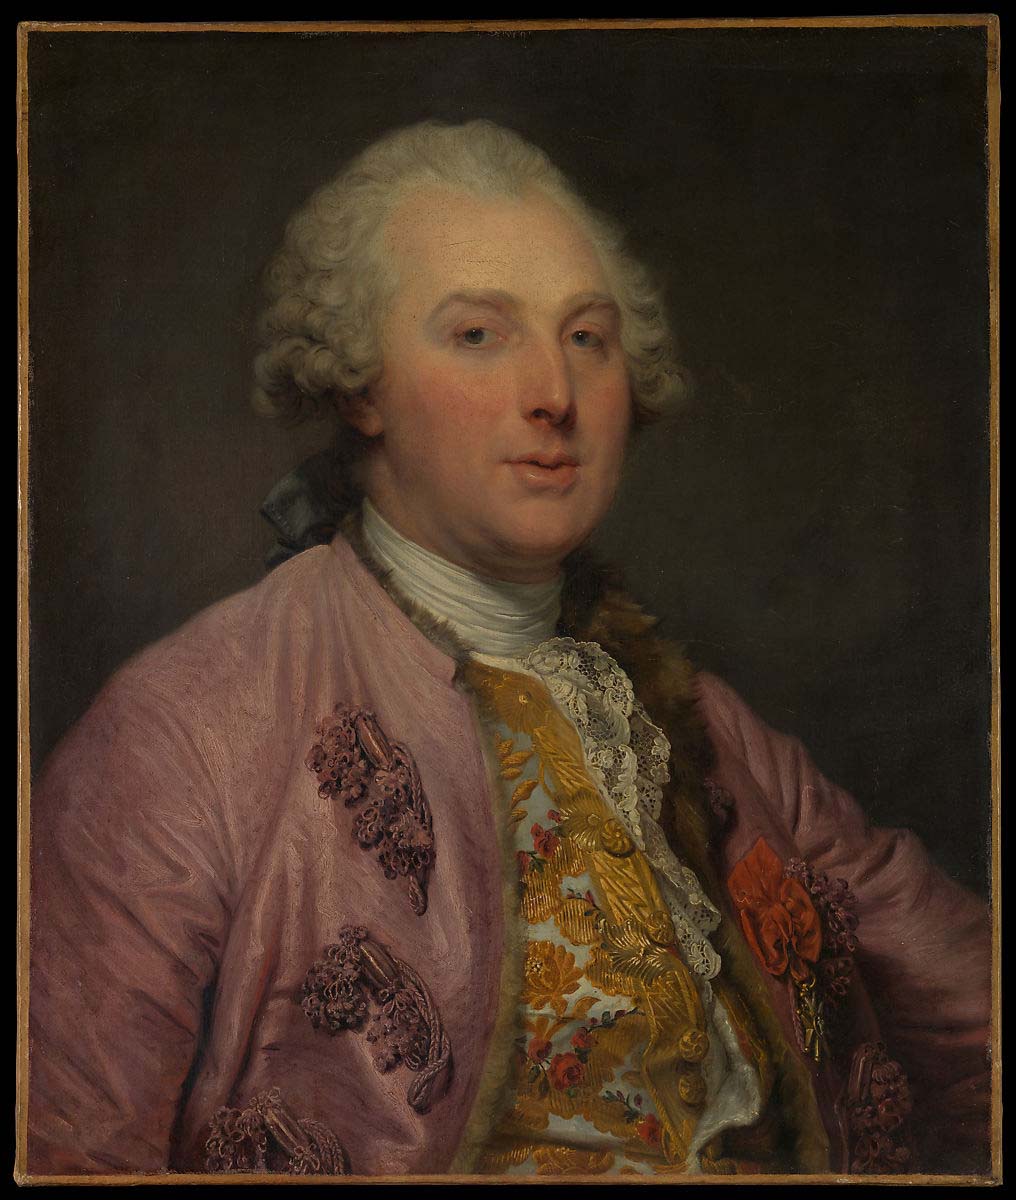 Charles Claude de Flahaut (1730–1809), Comte d'Angiviller